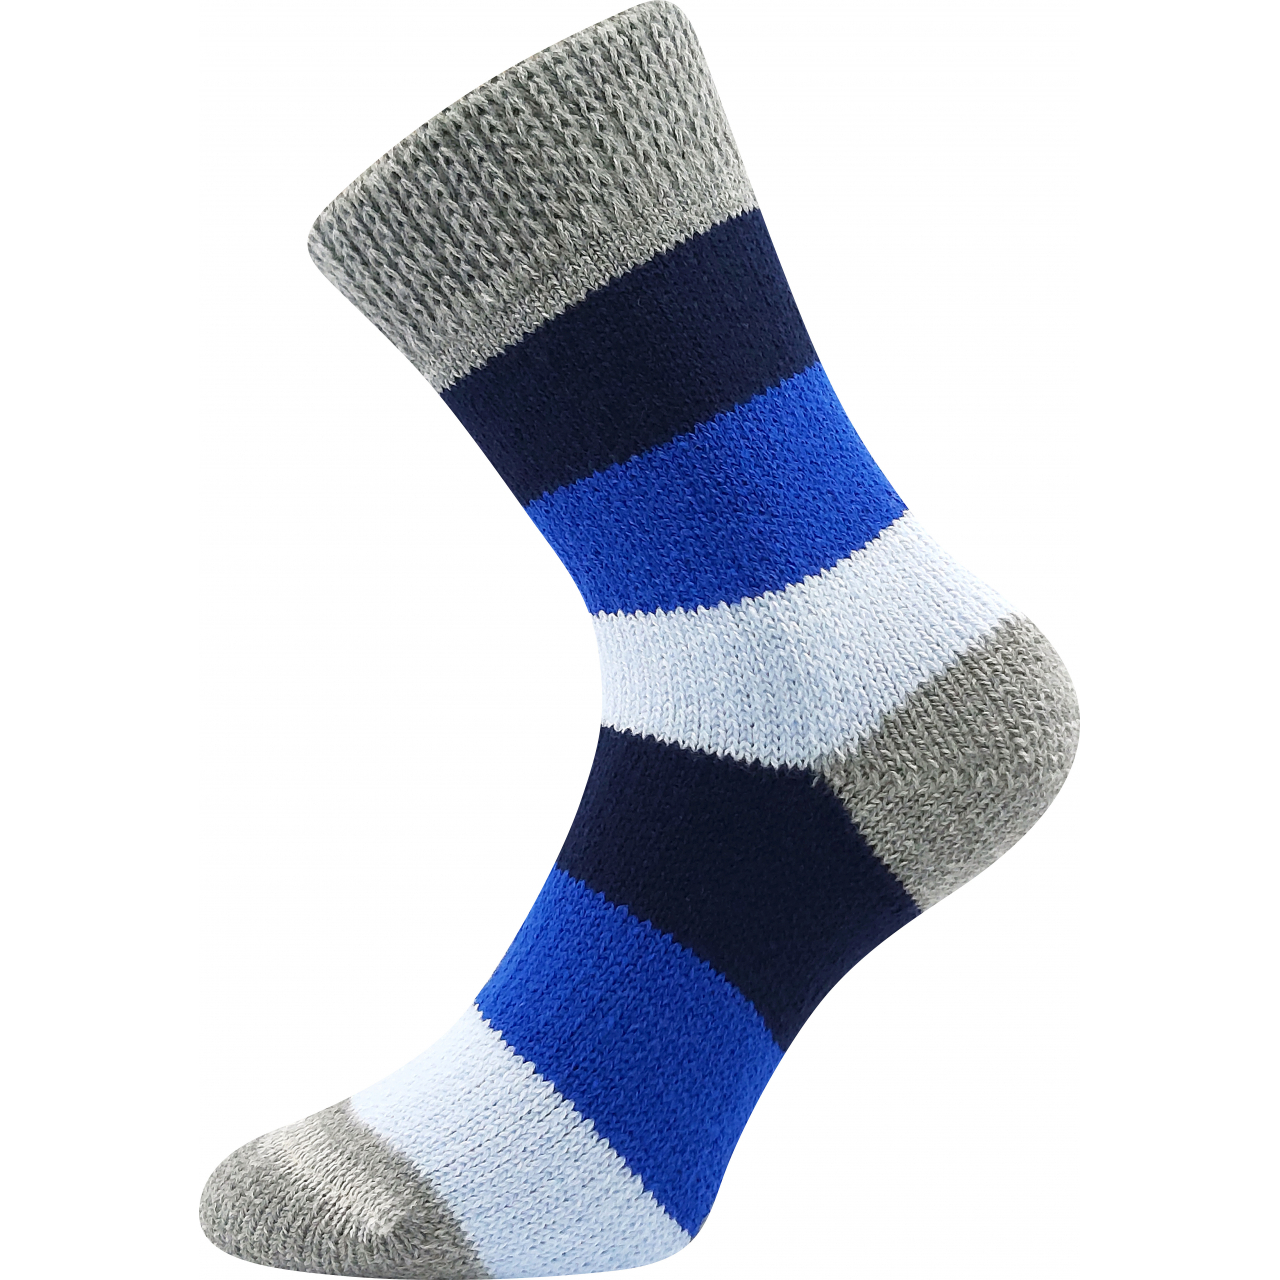 Ponožky spací unisex Boma Spací Pruh - modré-šedé, 39-42